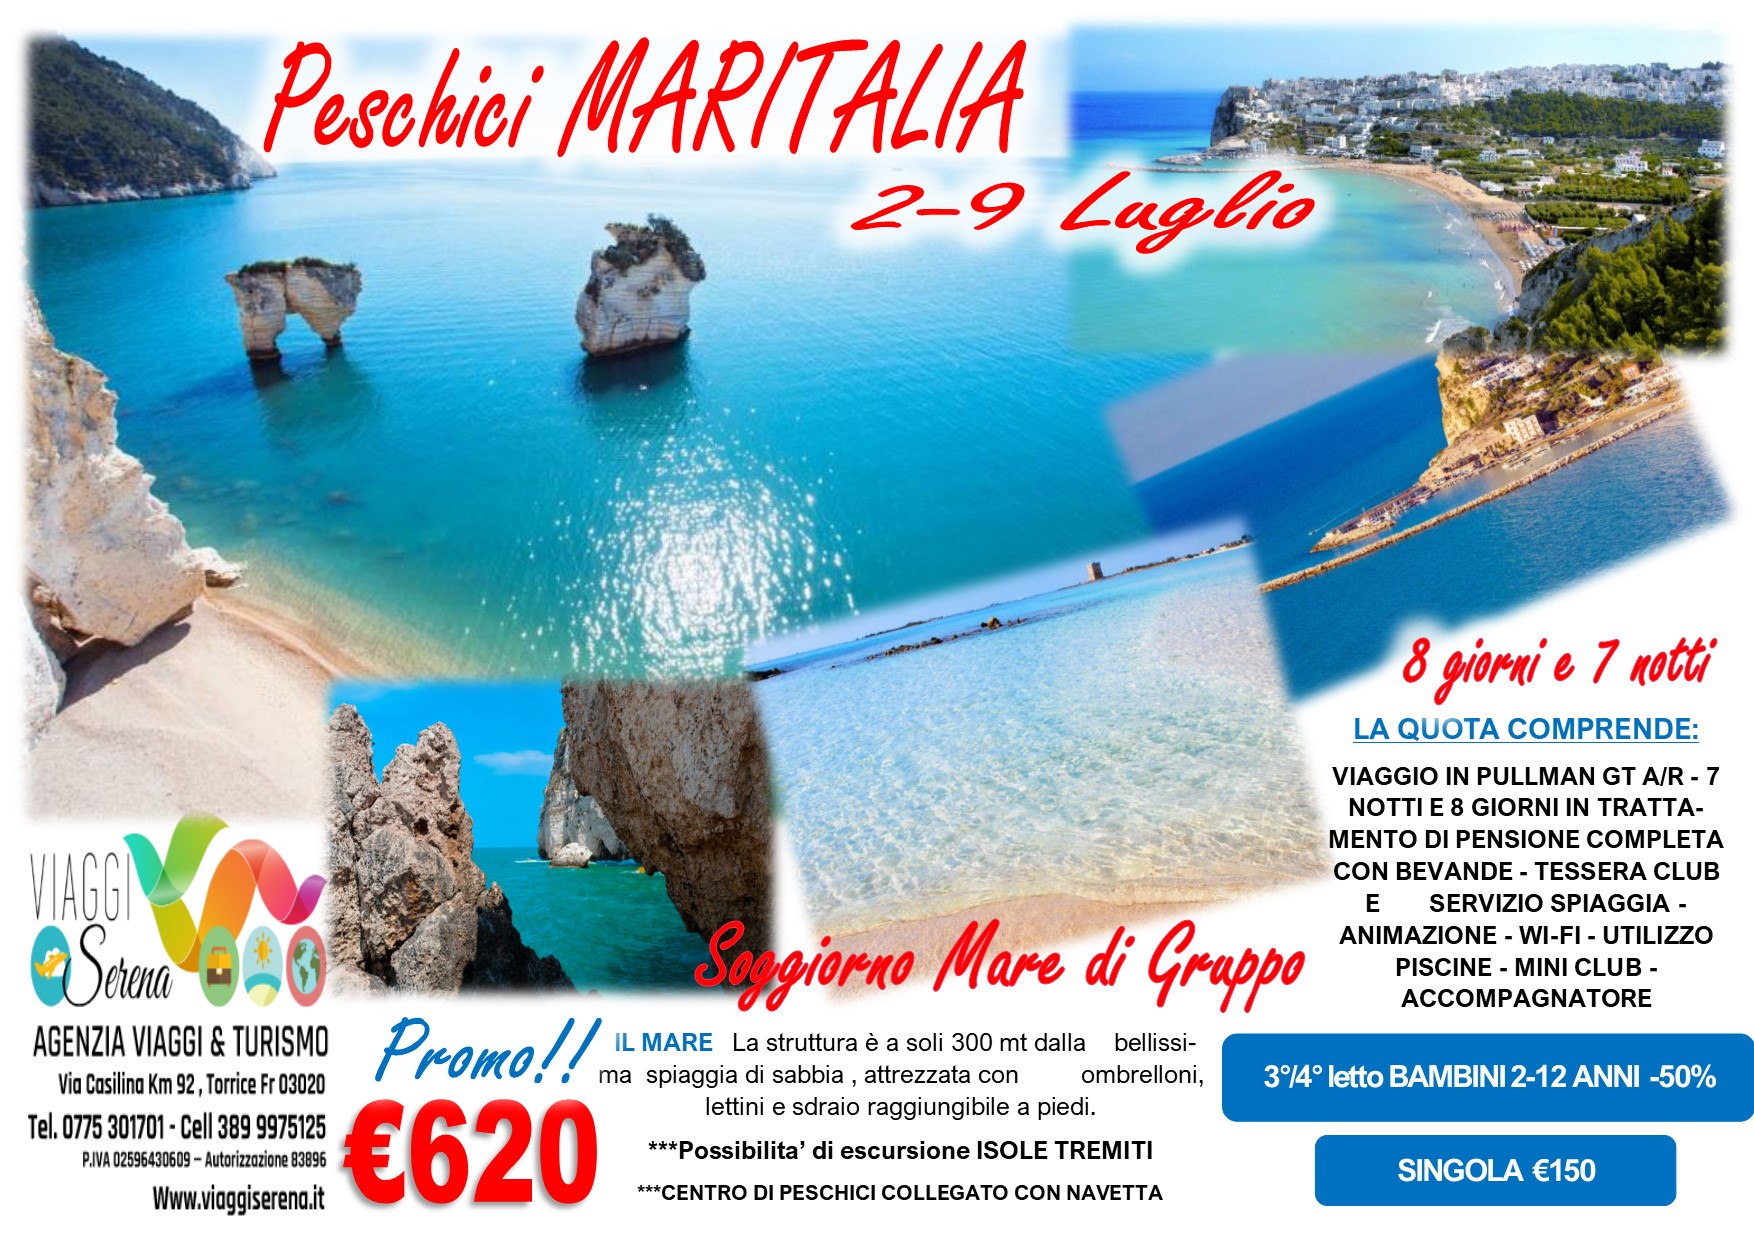 Viaggi di Gruppo: Soggiorno Mare “Villaggio Maritalia” Peschici 2-9 Luglio €620,00